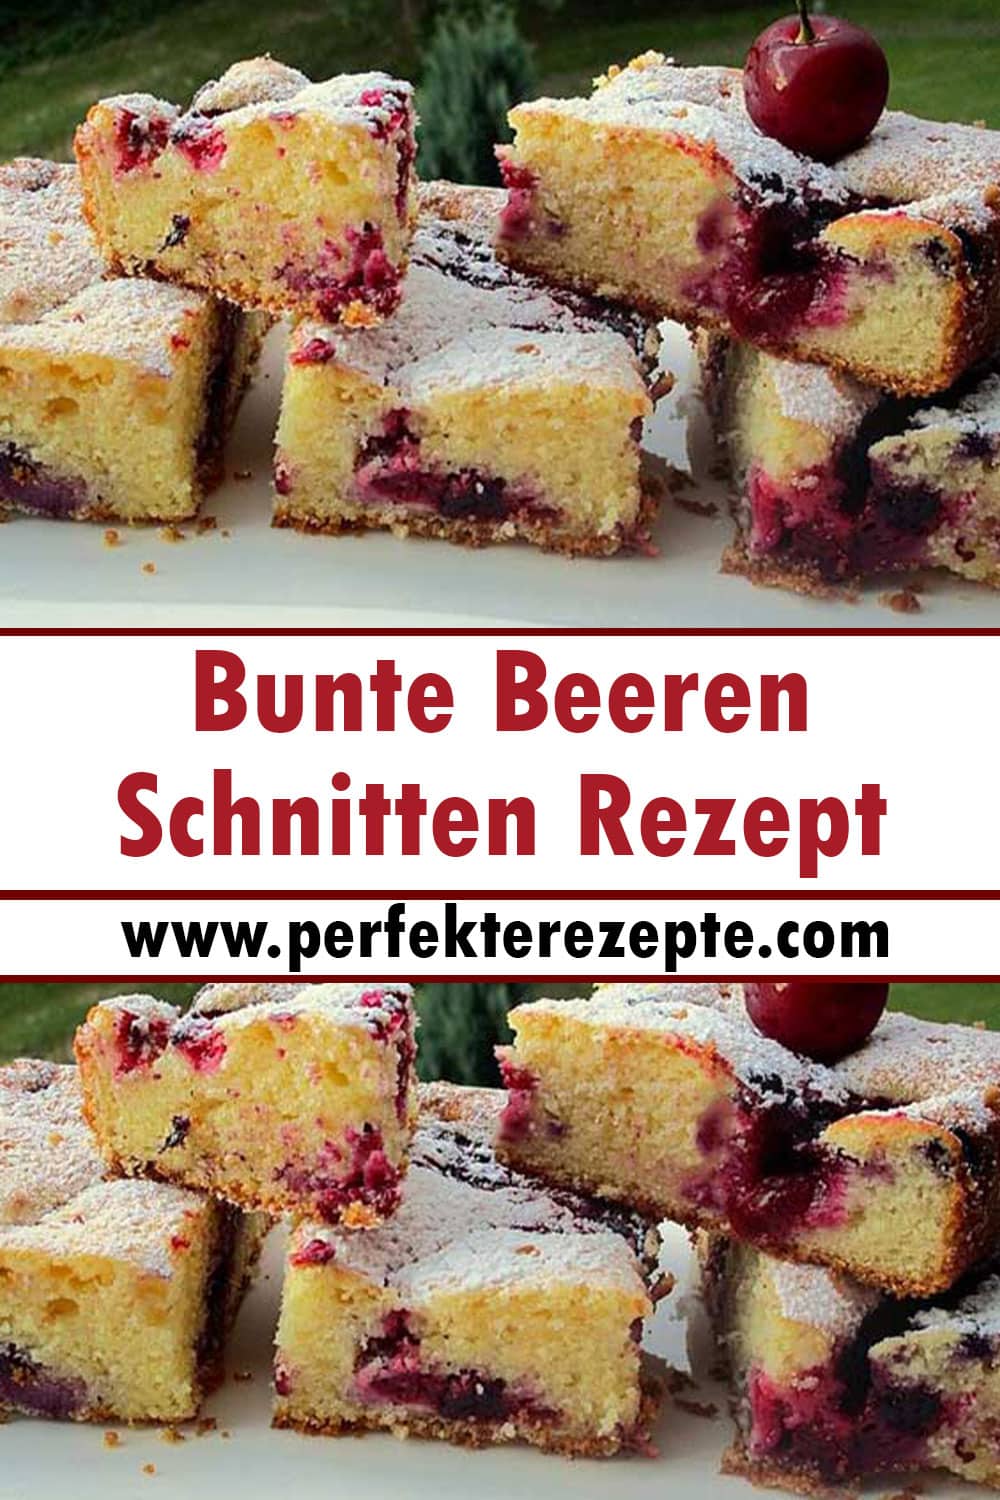 Bunte Beeren-Schnitten Rezept